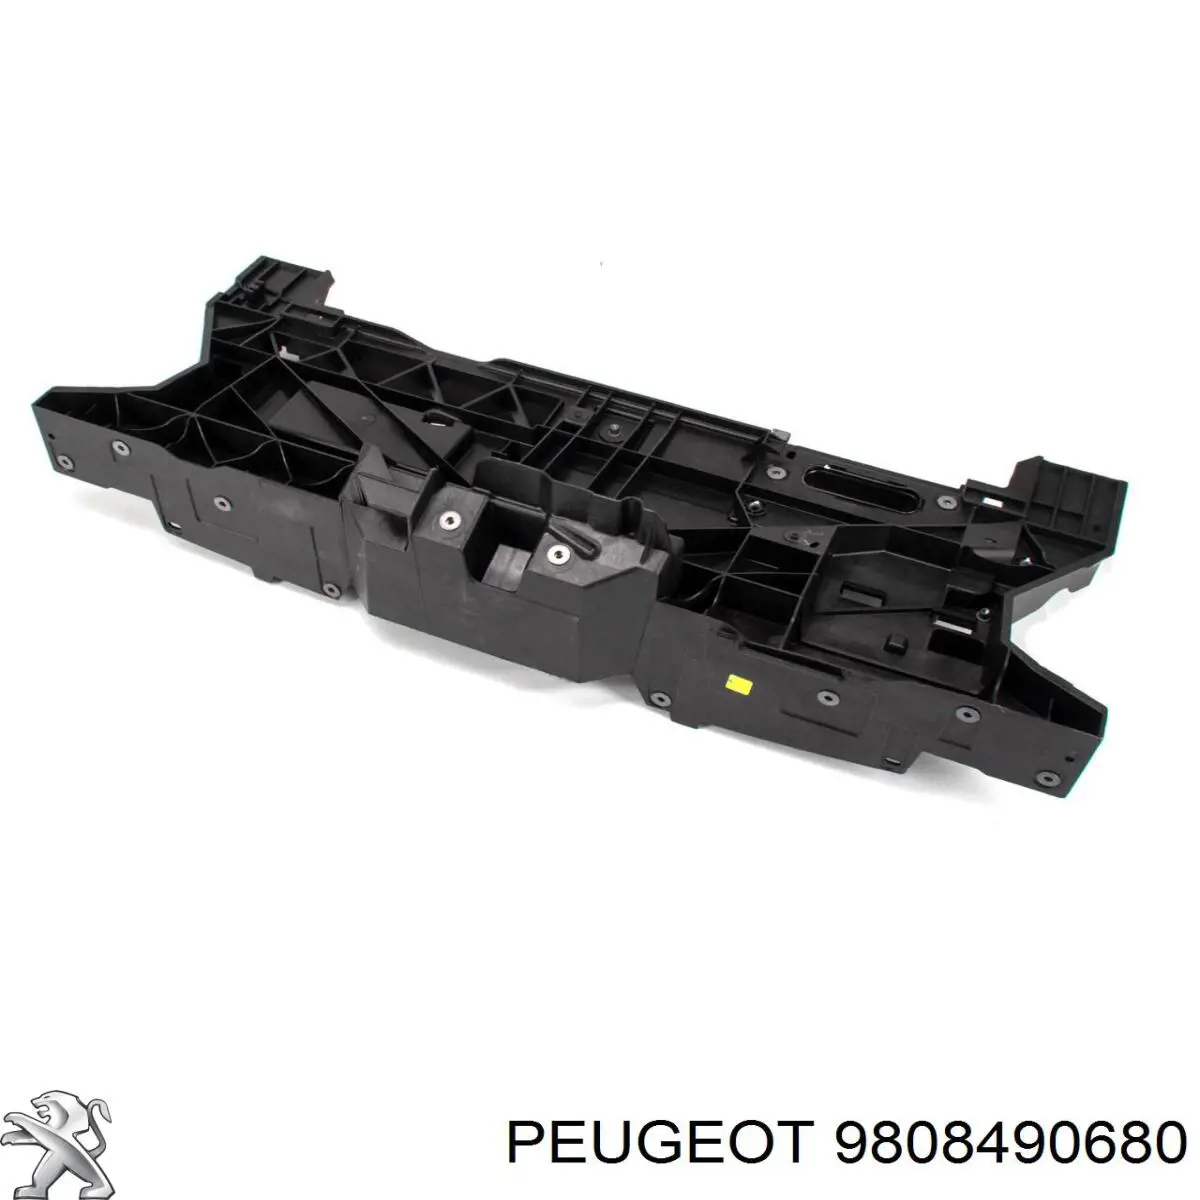 9808490680 Peugeot/Citroen soporte de parachoques delantero central